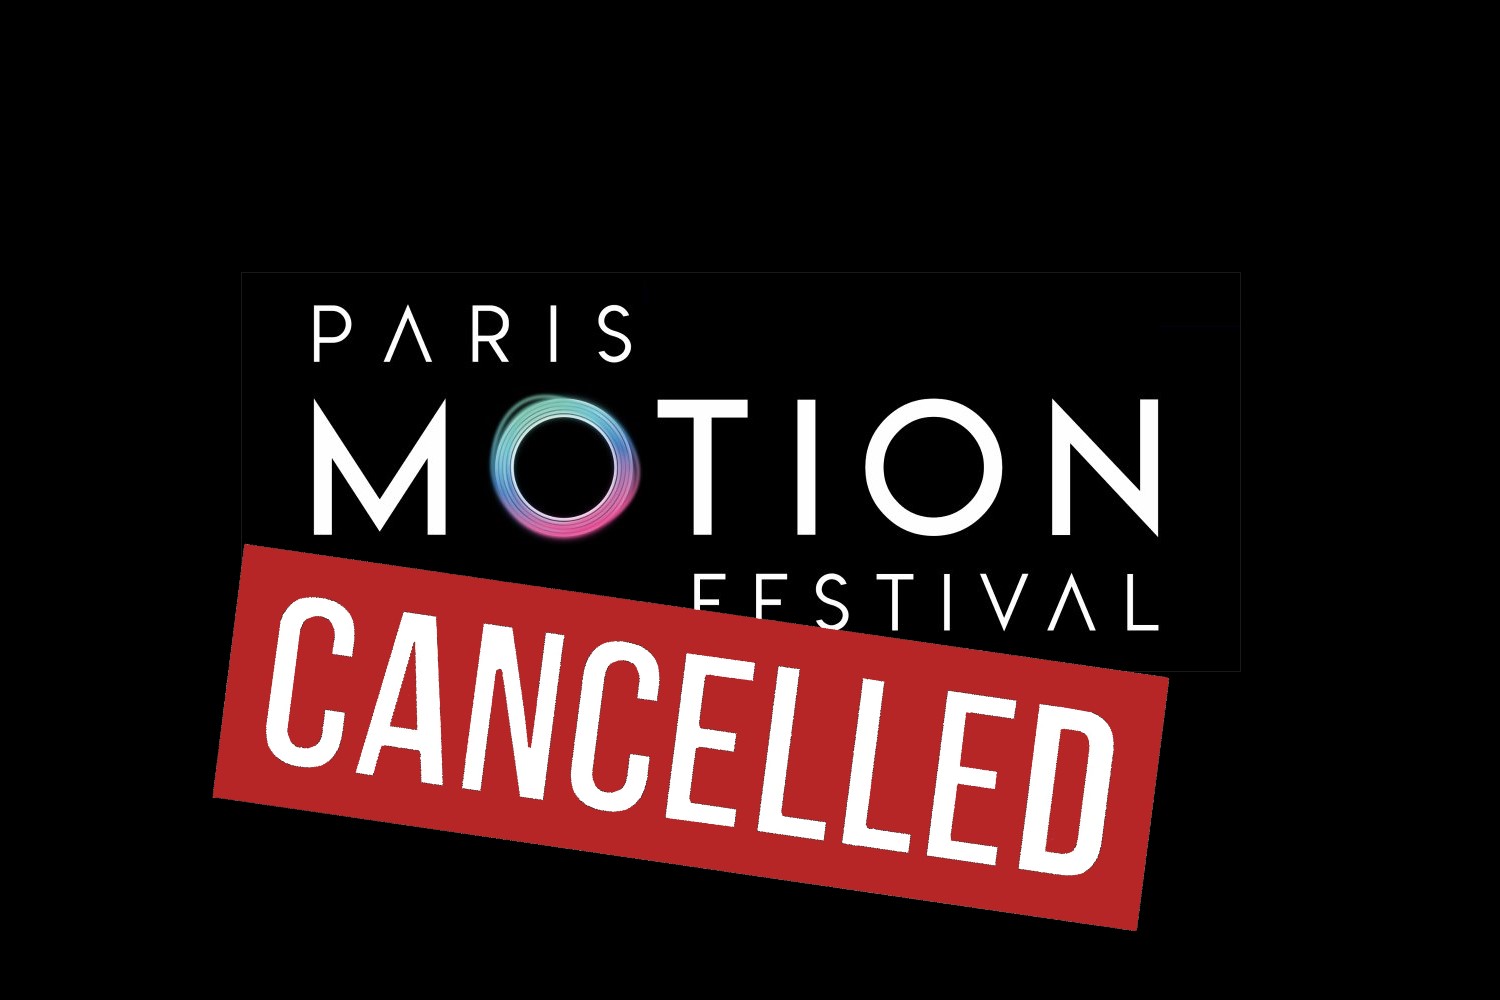 Paris Motion Festival